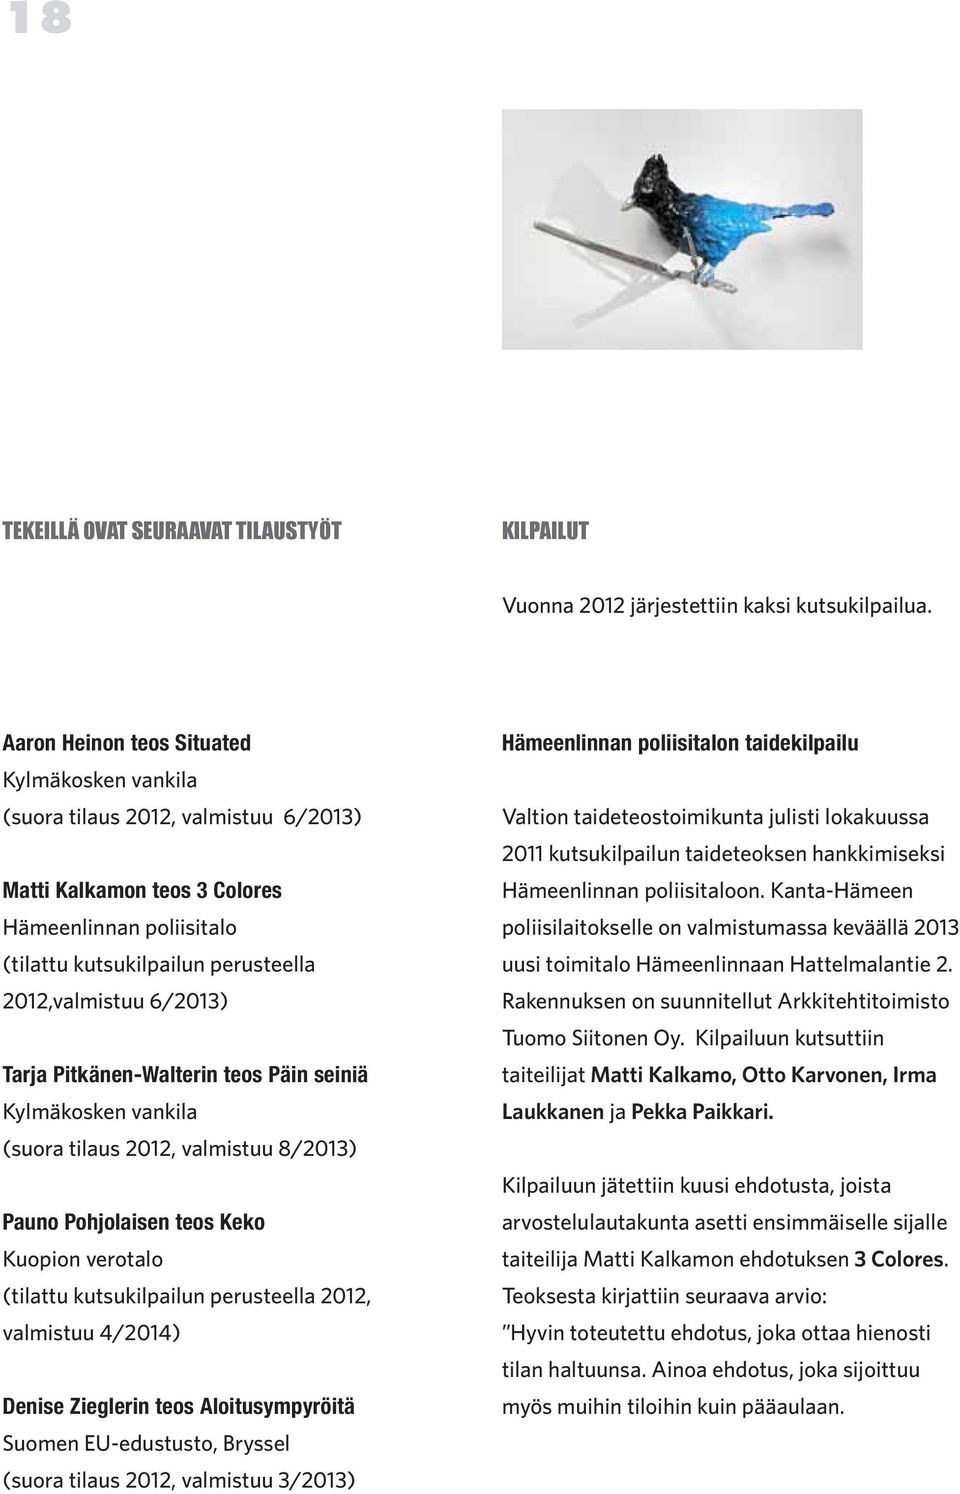 Tarja Pitkänen-Walterin teos Päin seiniä Kylmäkosken vankila (suora tilaus 2012, valmistuu 8/2013) Pauno Pohjolaisen teos Keko Kuopion verotalo (tilattu kutsukilpailun perusteella 2012, valmistuu